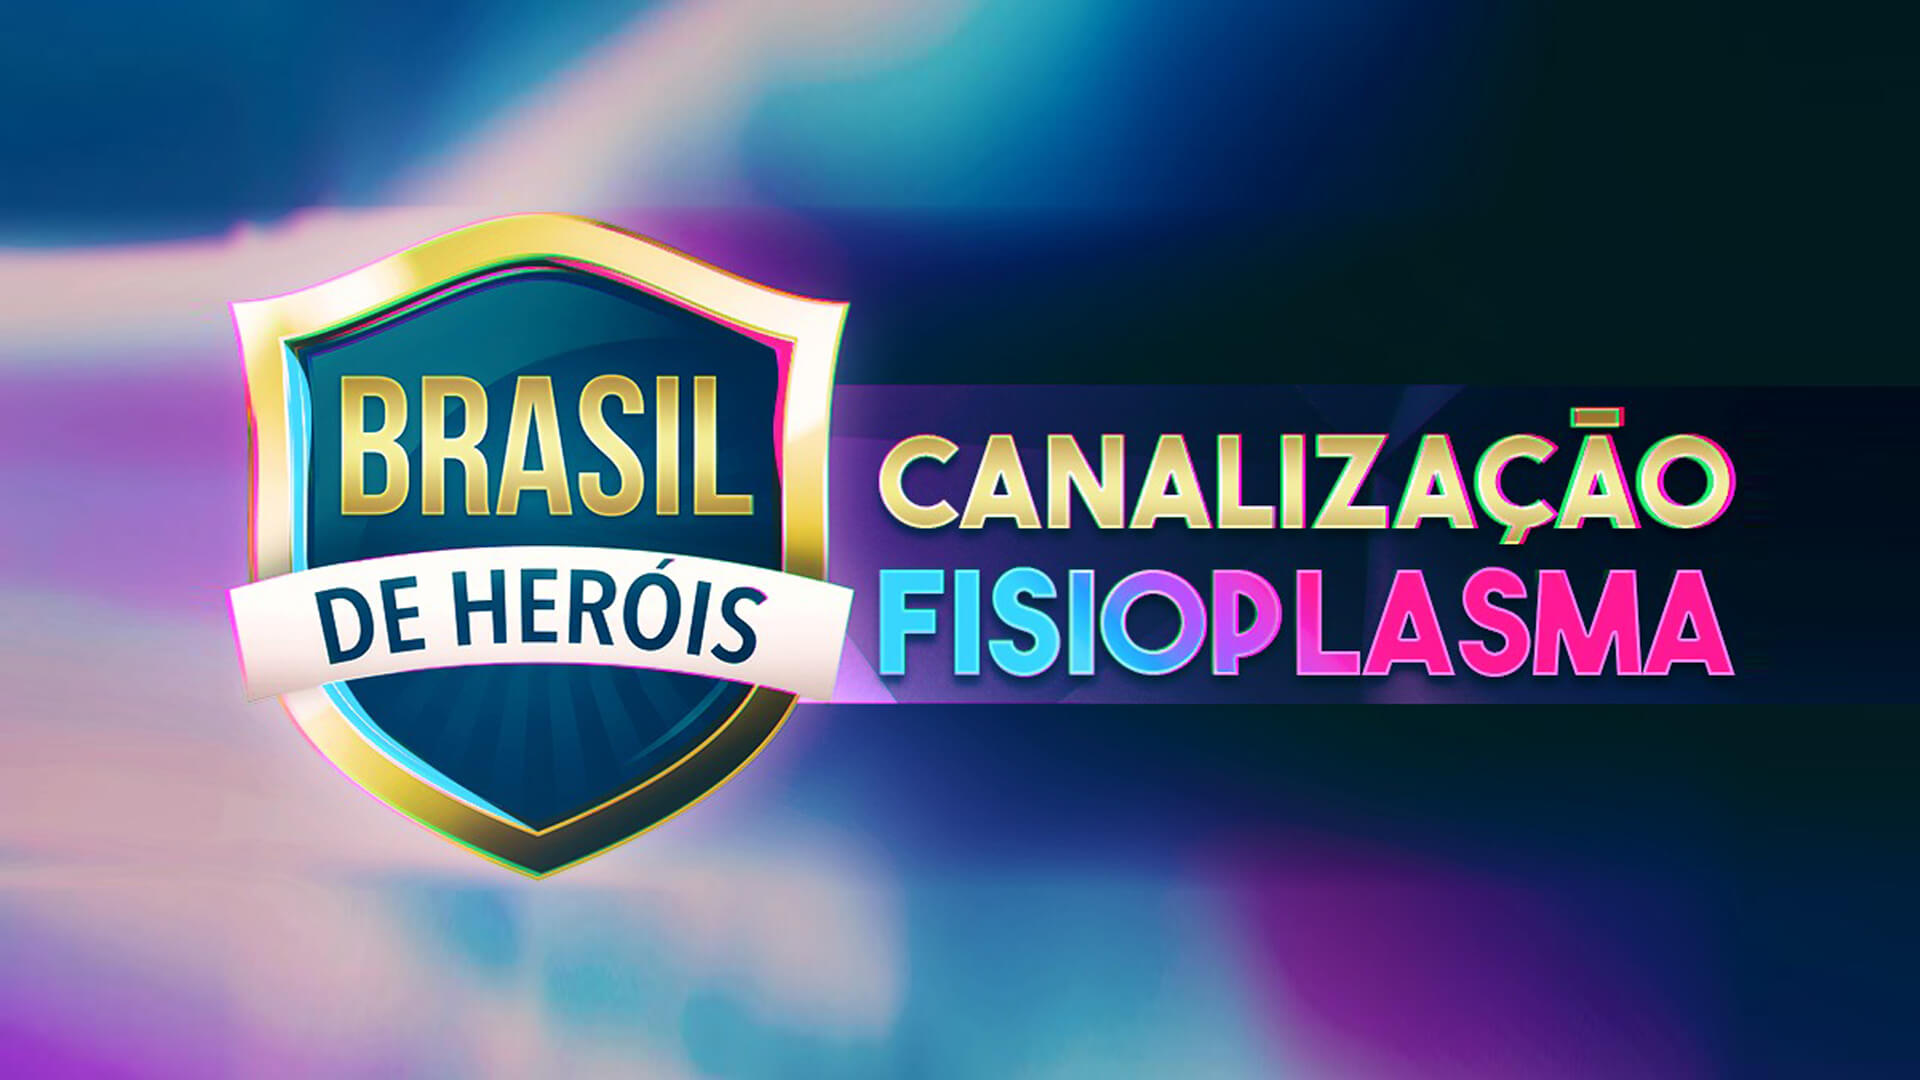 Canalização do Fisioplasma - Brasil de Heróis